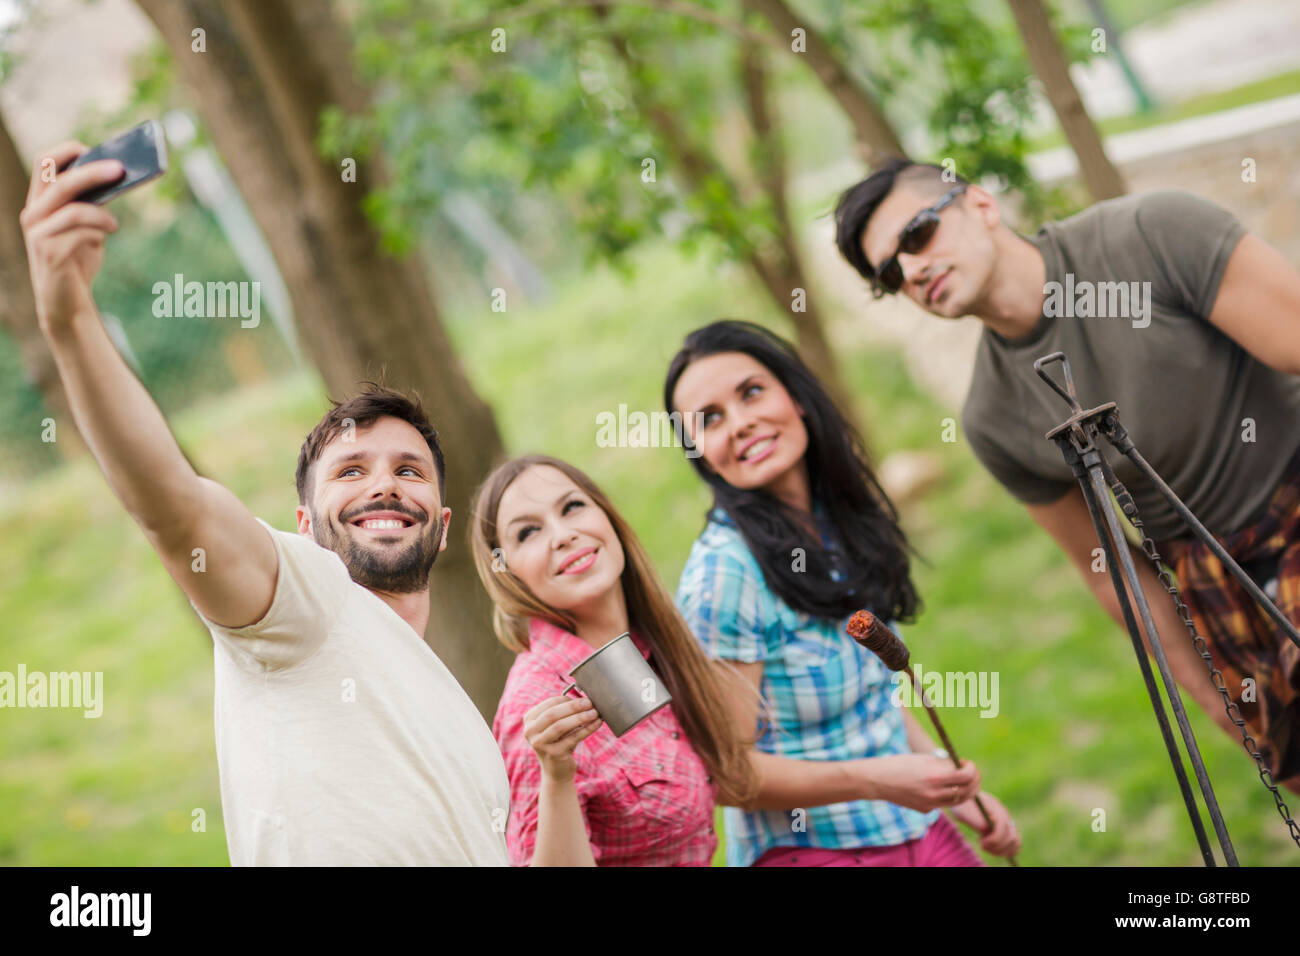 Grupo de amigos tomando selfies en camping Foto de stock